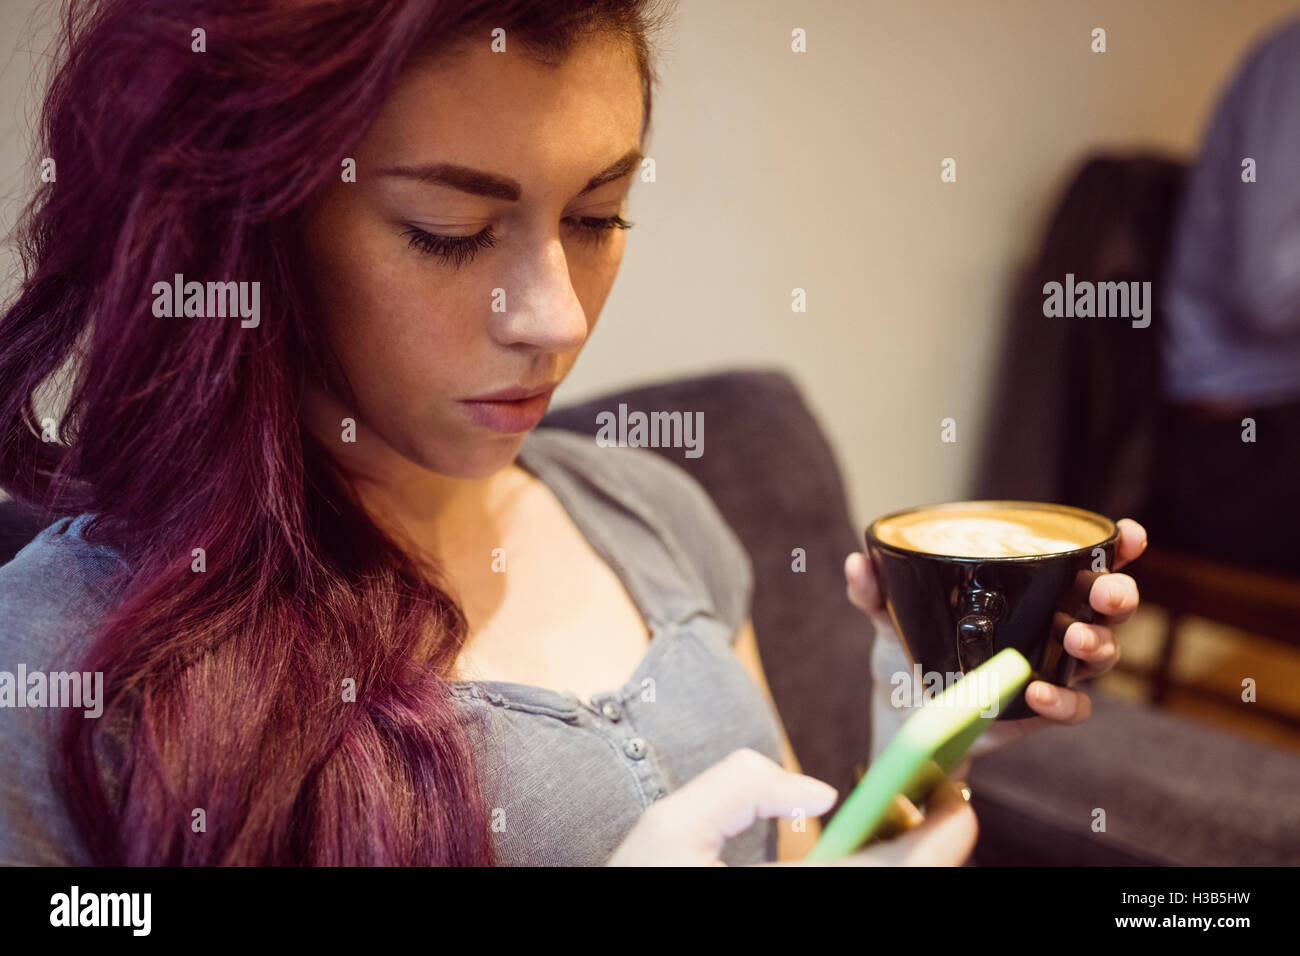 Femme de boire une tasse de café tout en utilisant un smartphone Banque D'Images